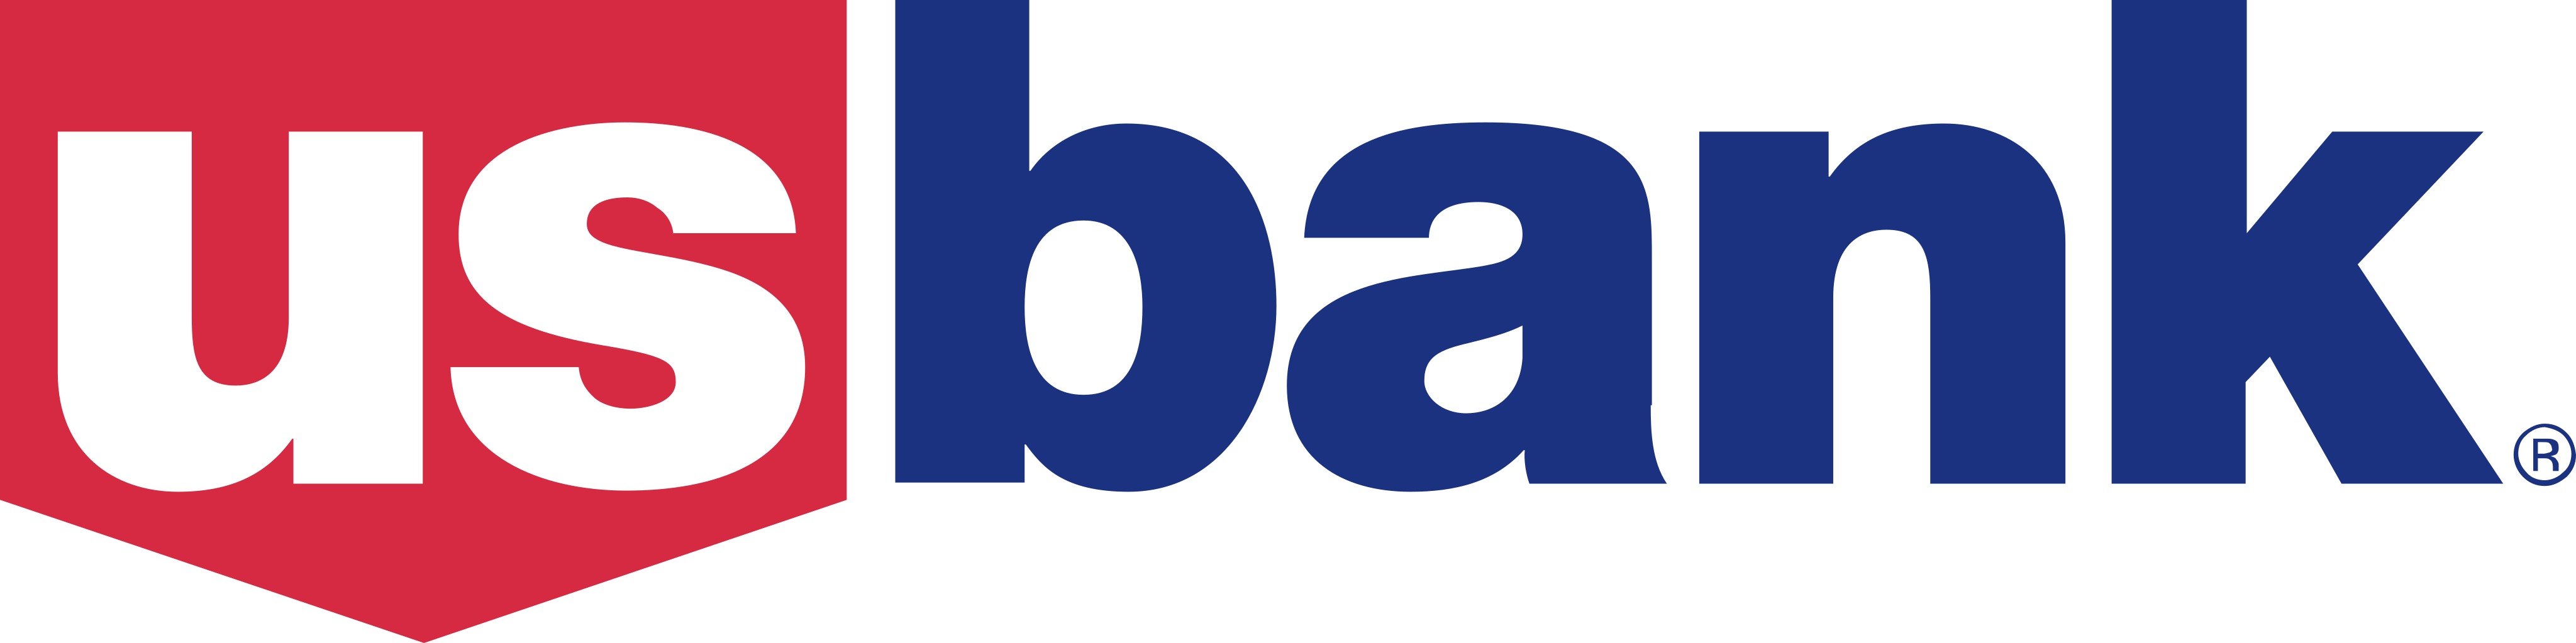 US Bank Logo.